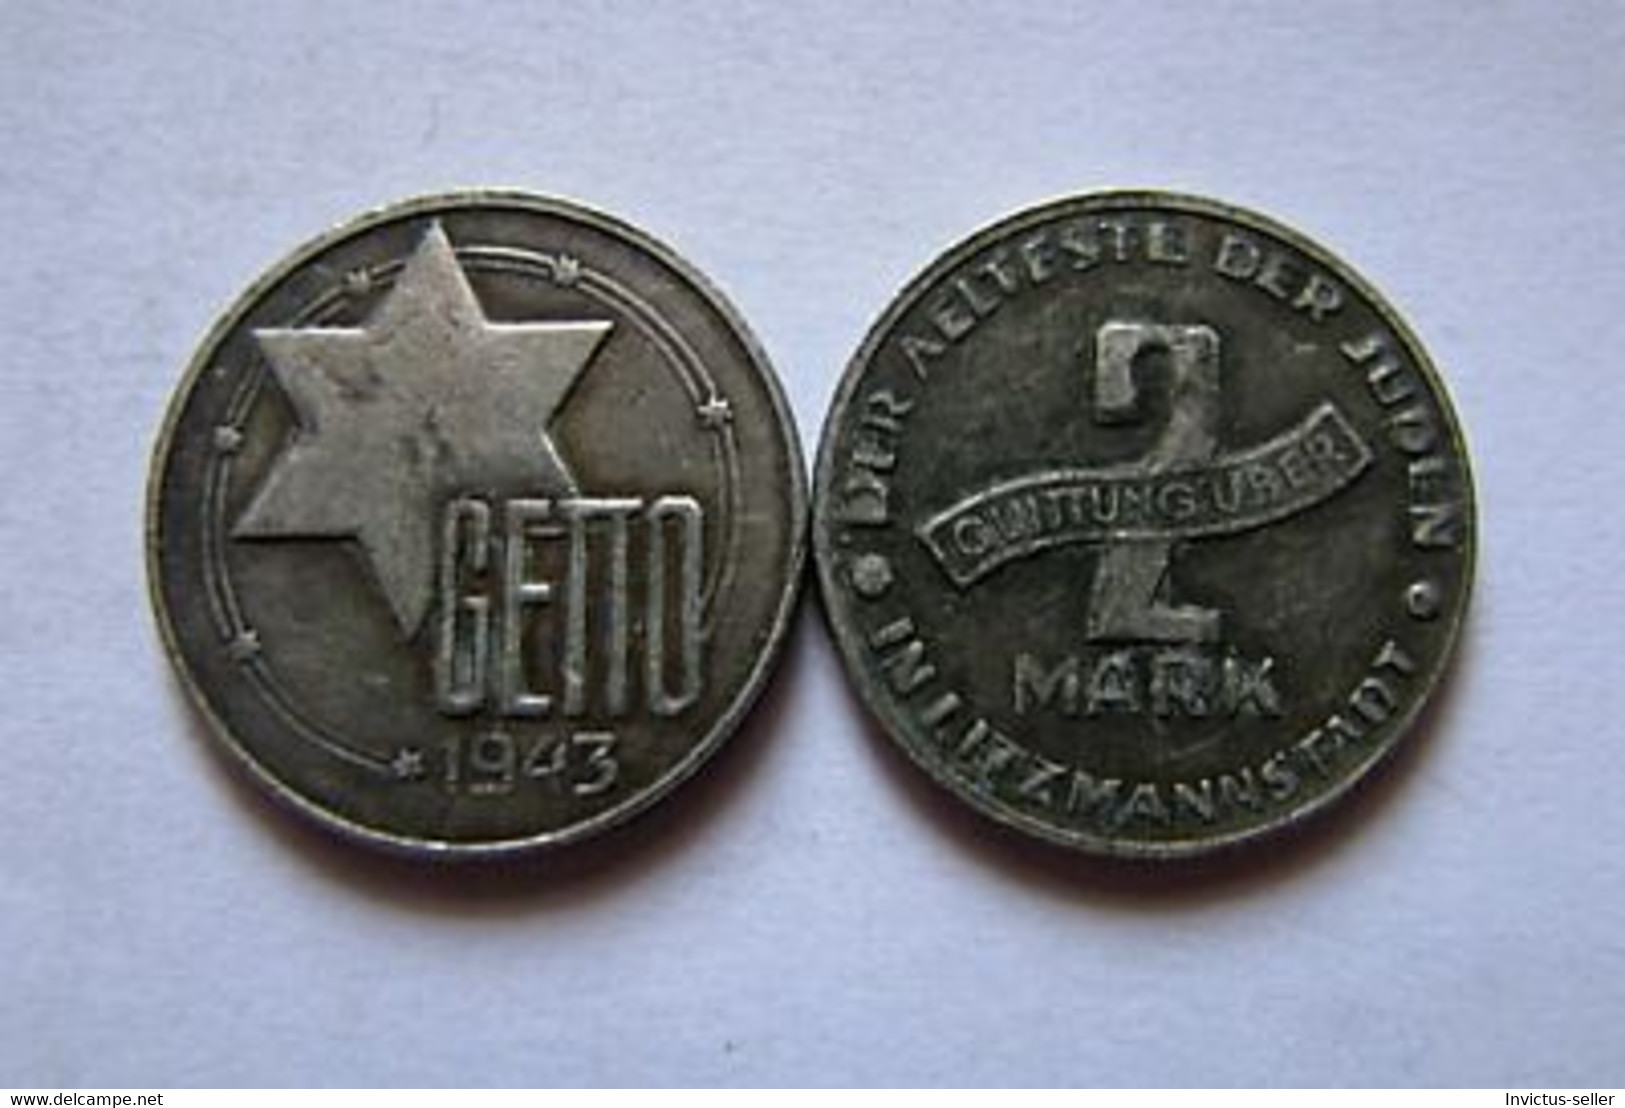 GETTO 2 MARK 1943 LITZMANNSTADT GERMAN COIN MONETA GHETTO EBREI JUDE JUIFE Auschwitz JUDE EBREI GERMANY - Colecciones